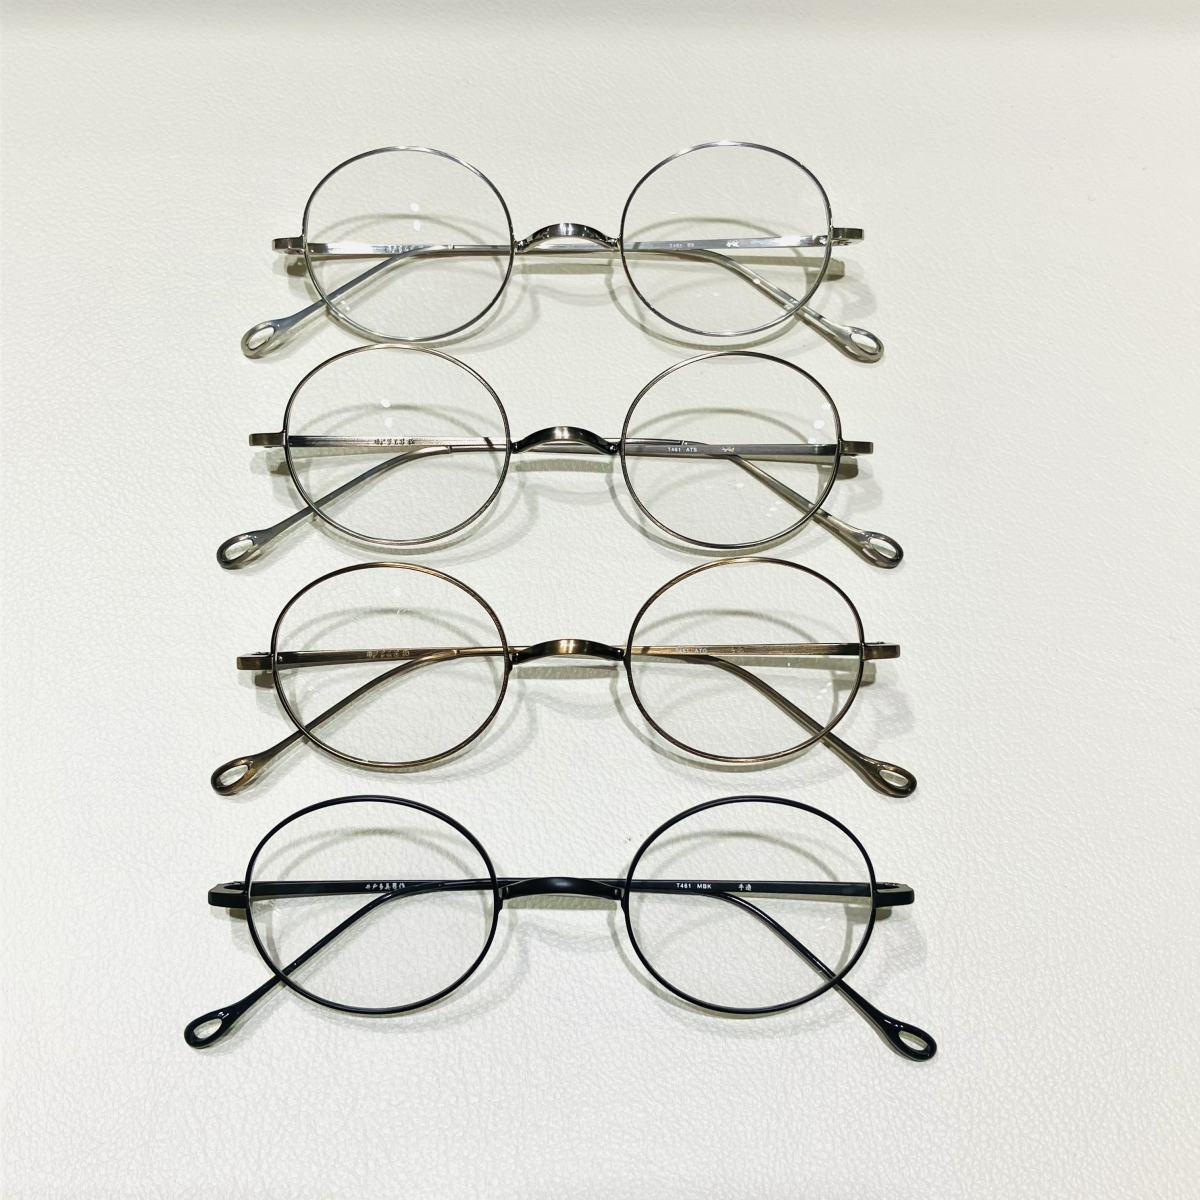 都内の金子眼鏡で購入しました井戸多美男作 T423-5 金子眼鏡 カネコメガネ